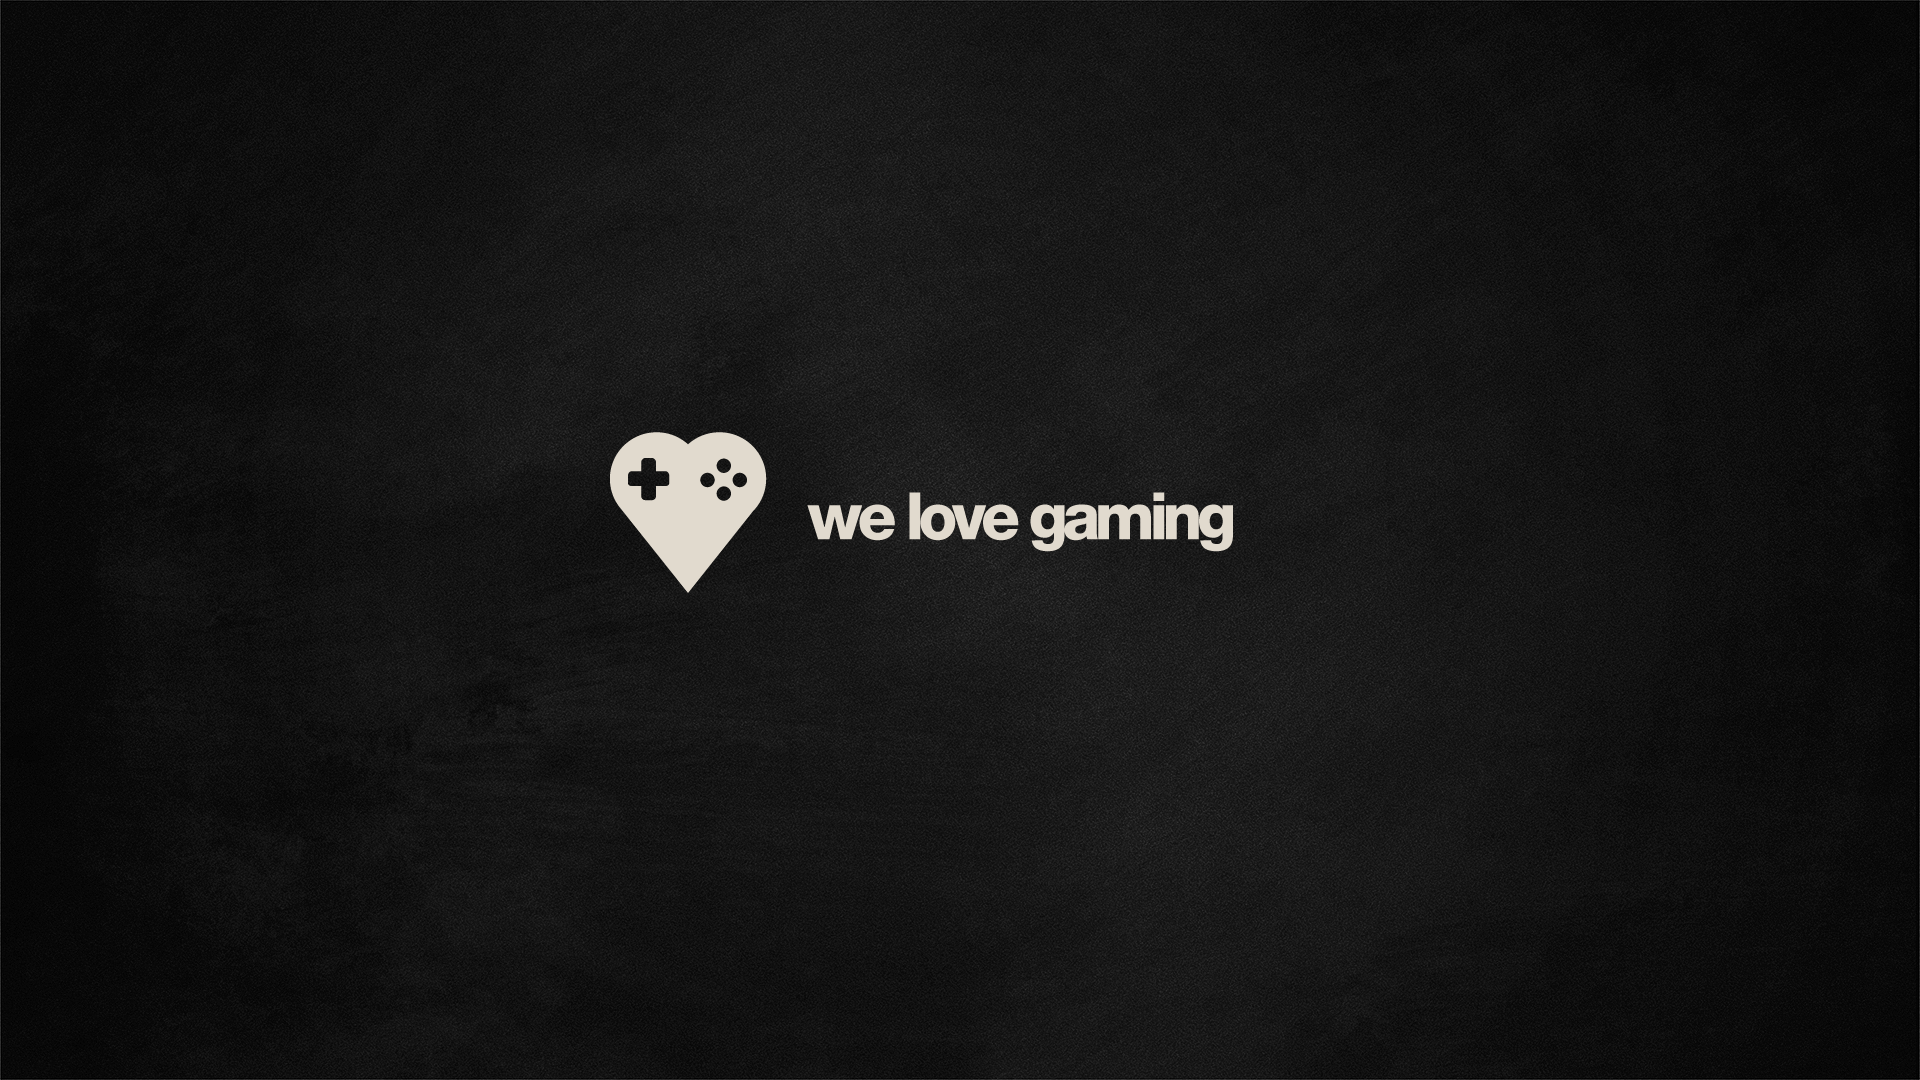 Обои с логотипом We Love Gaming (1920x1080) - Обои - Игры